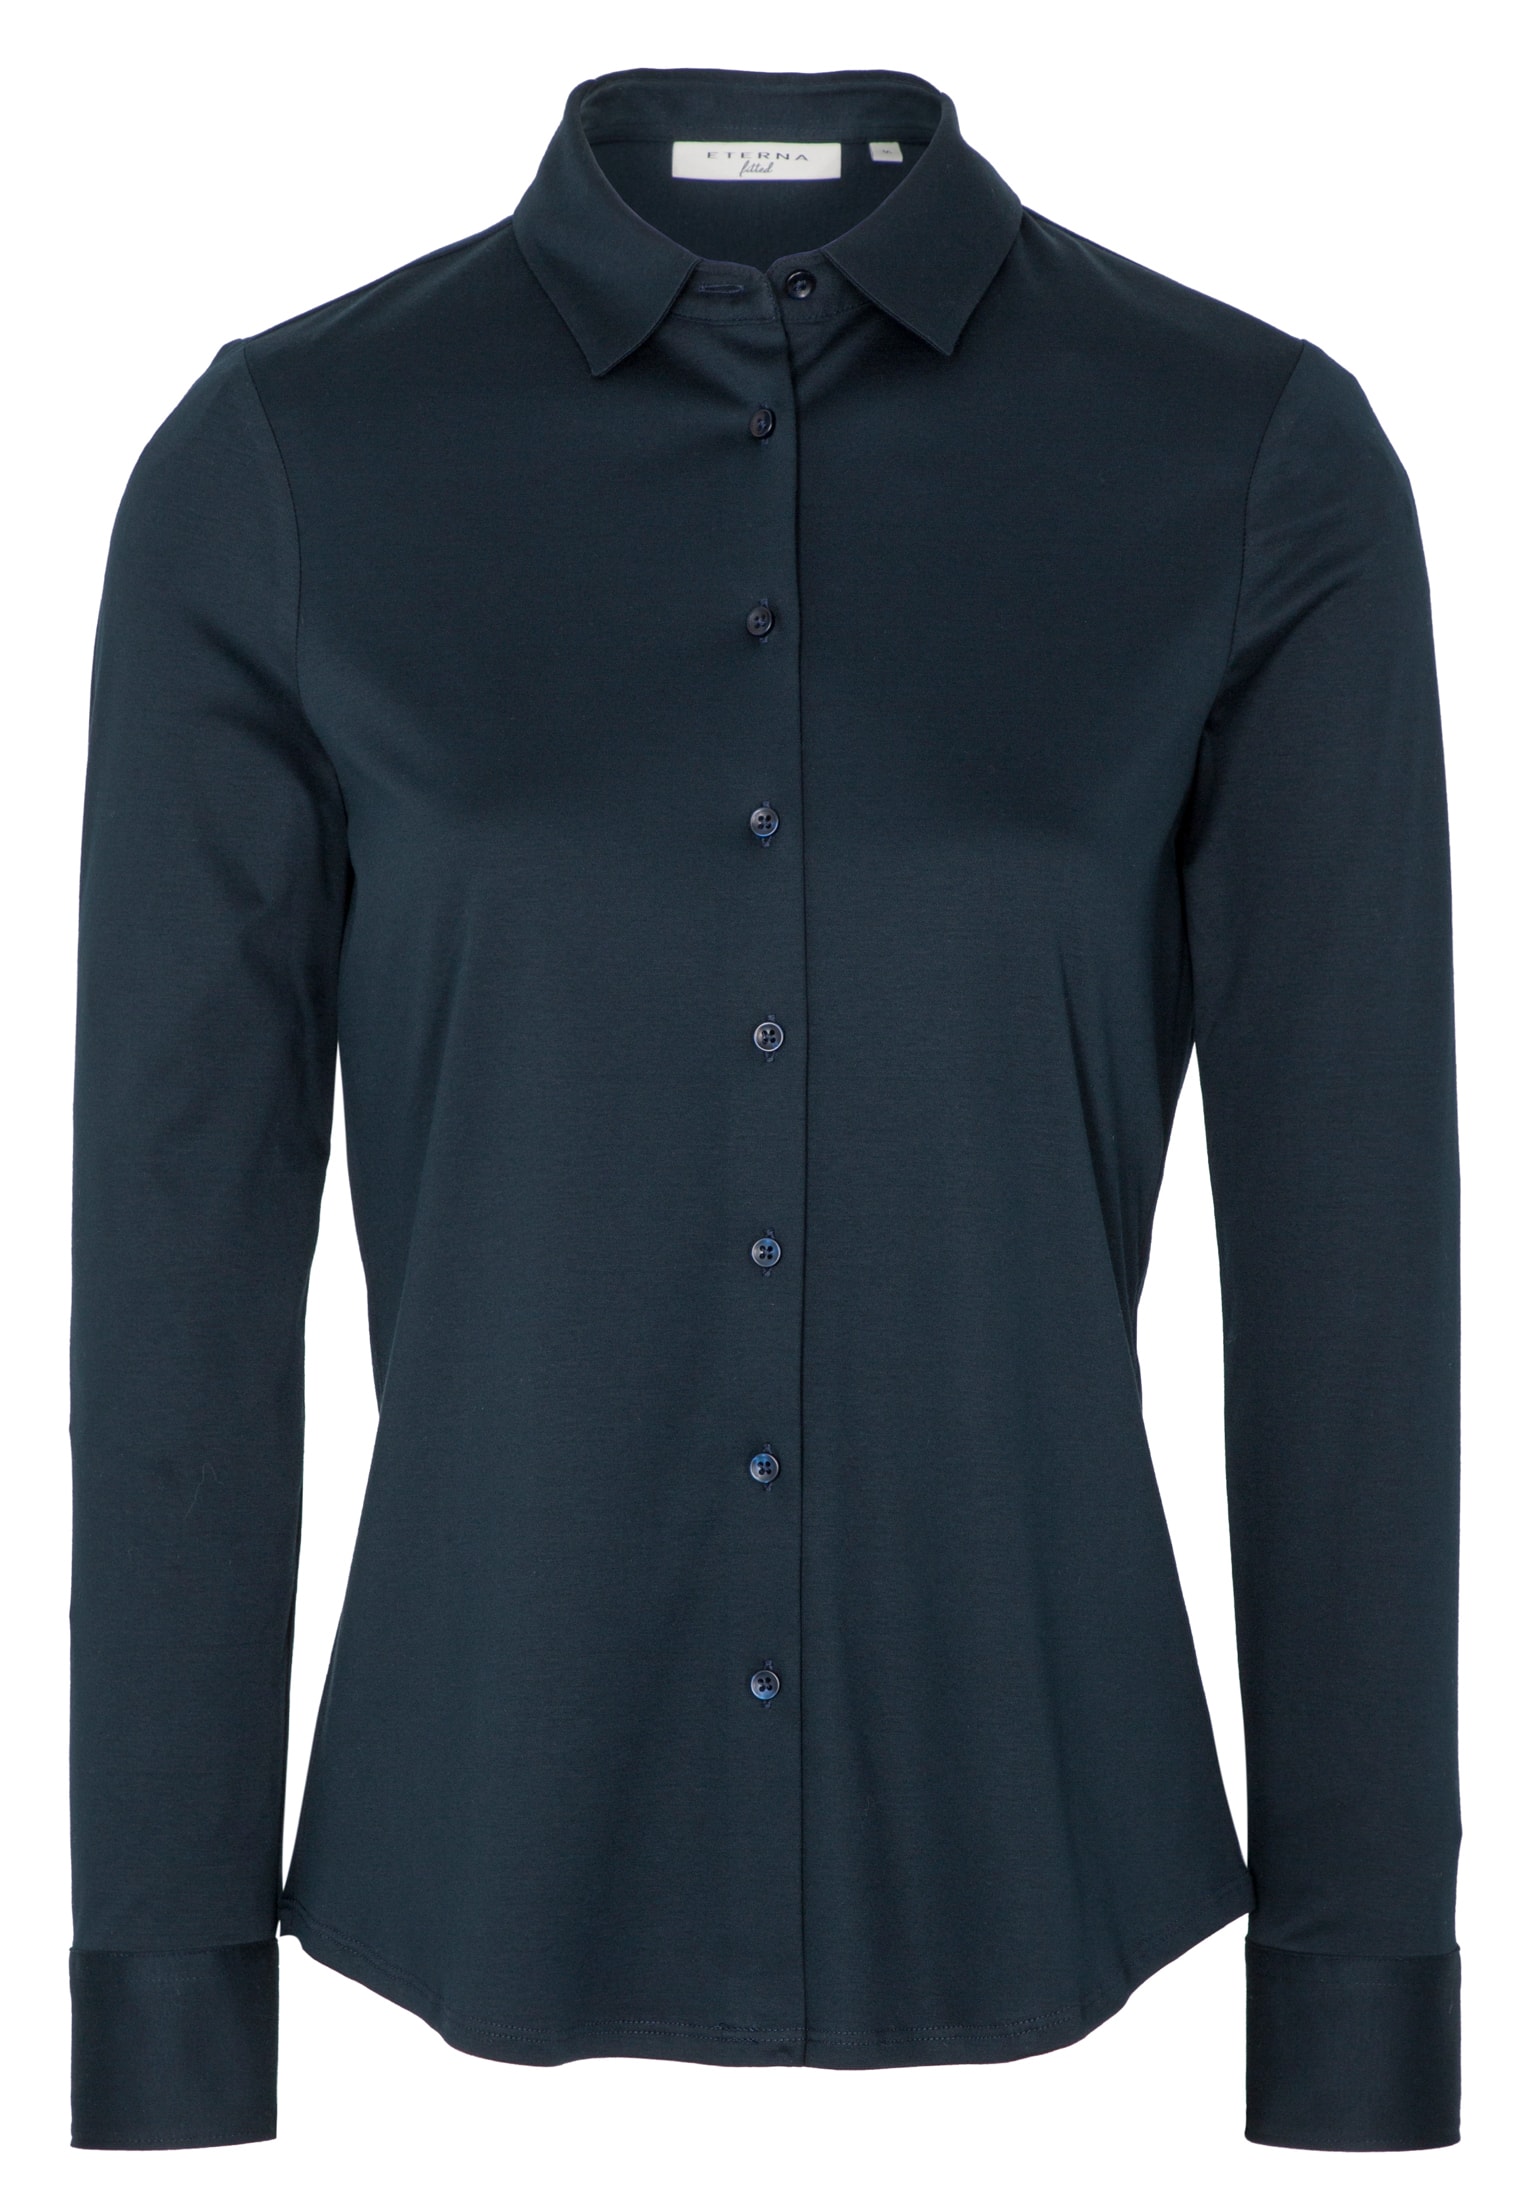 Jersey Shirt Bluse in navy unifarben | navy | Langarm | 44 |  2BL00229-01-91-44-1/1 | Einstecktücher